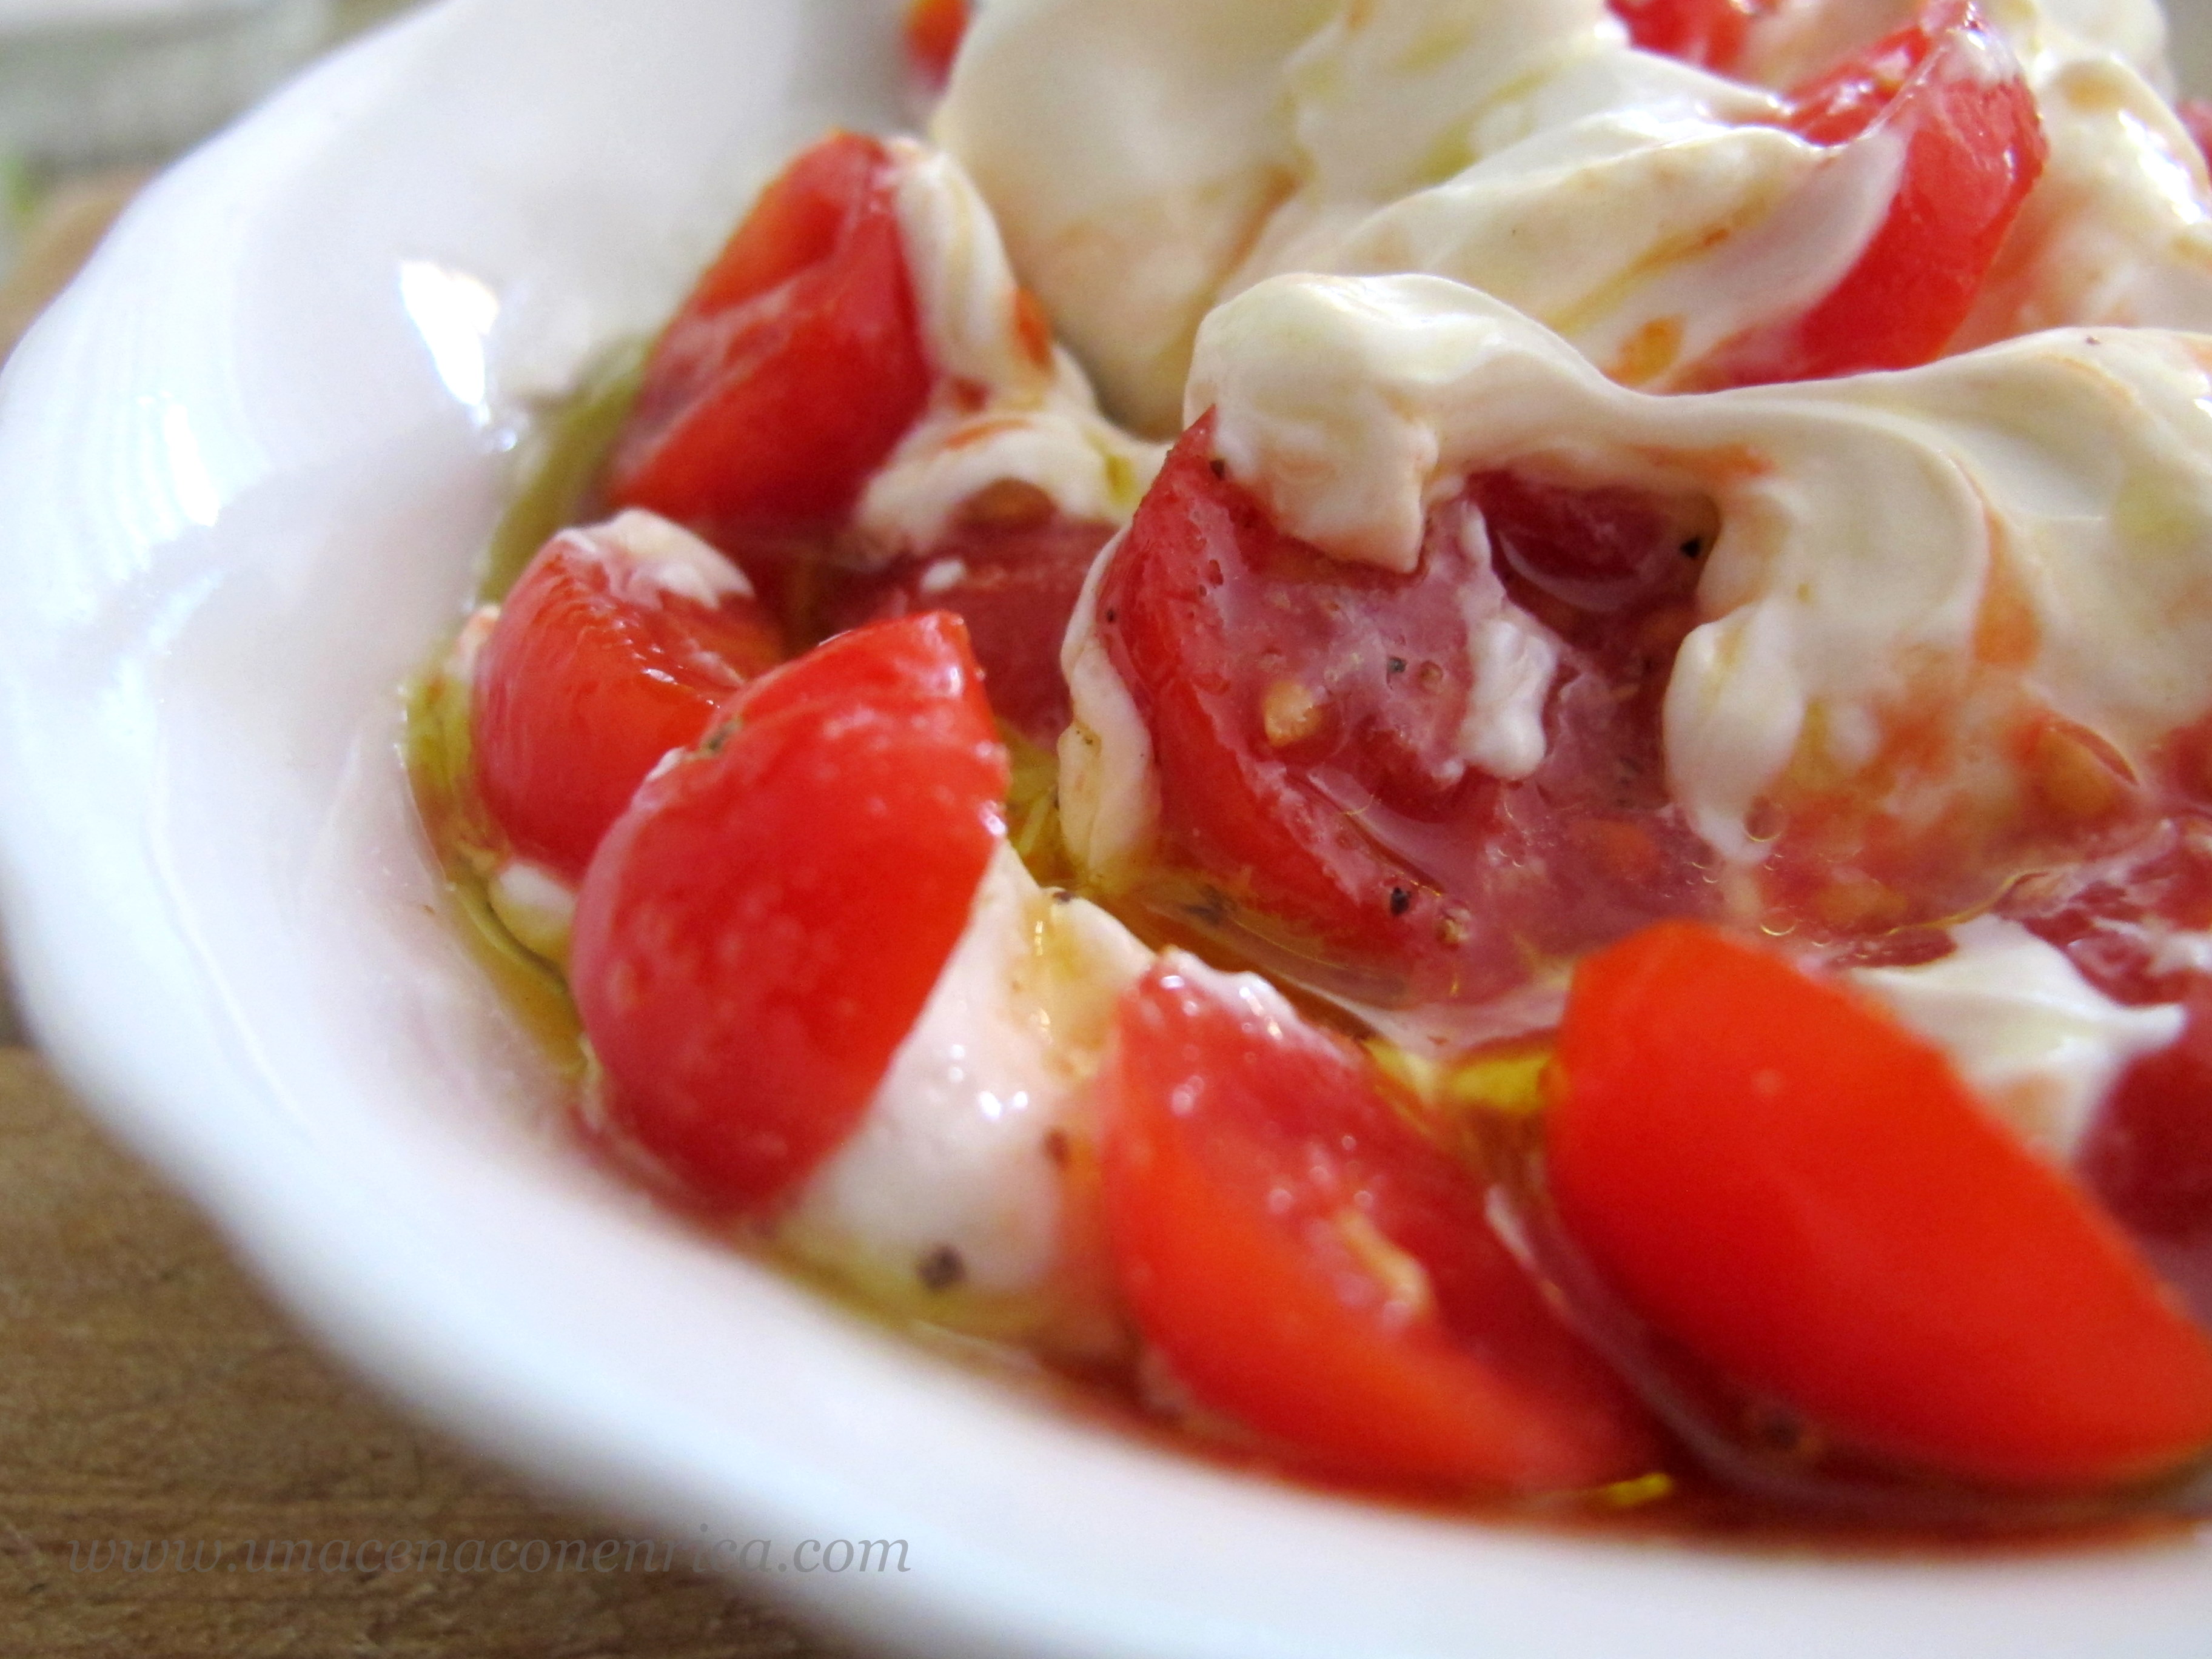 yogurt-greco-con-pomodori-datterini-005.jpg